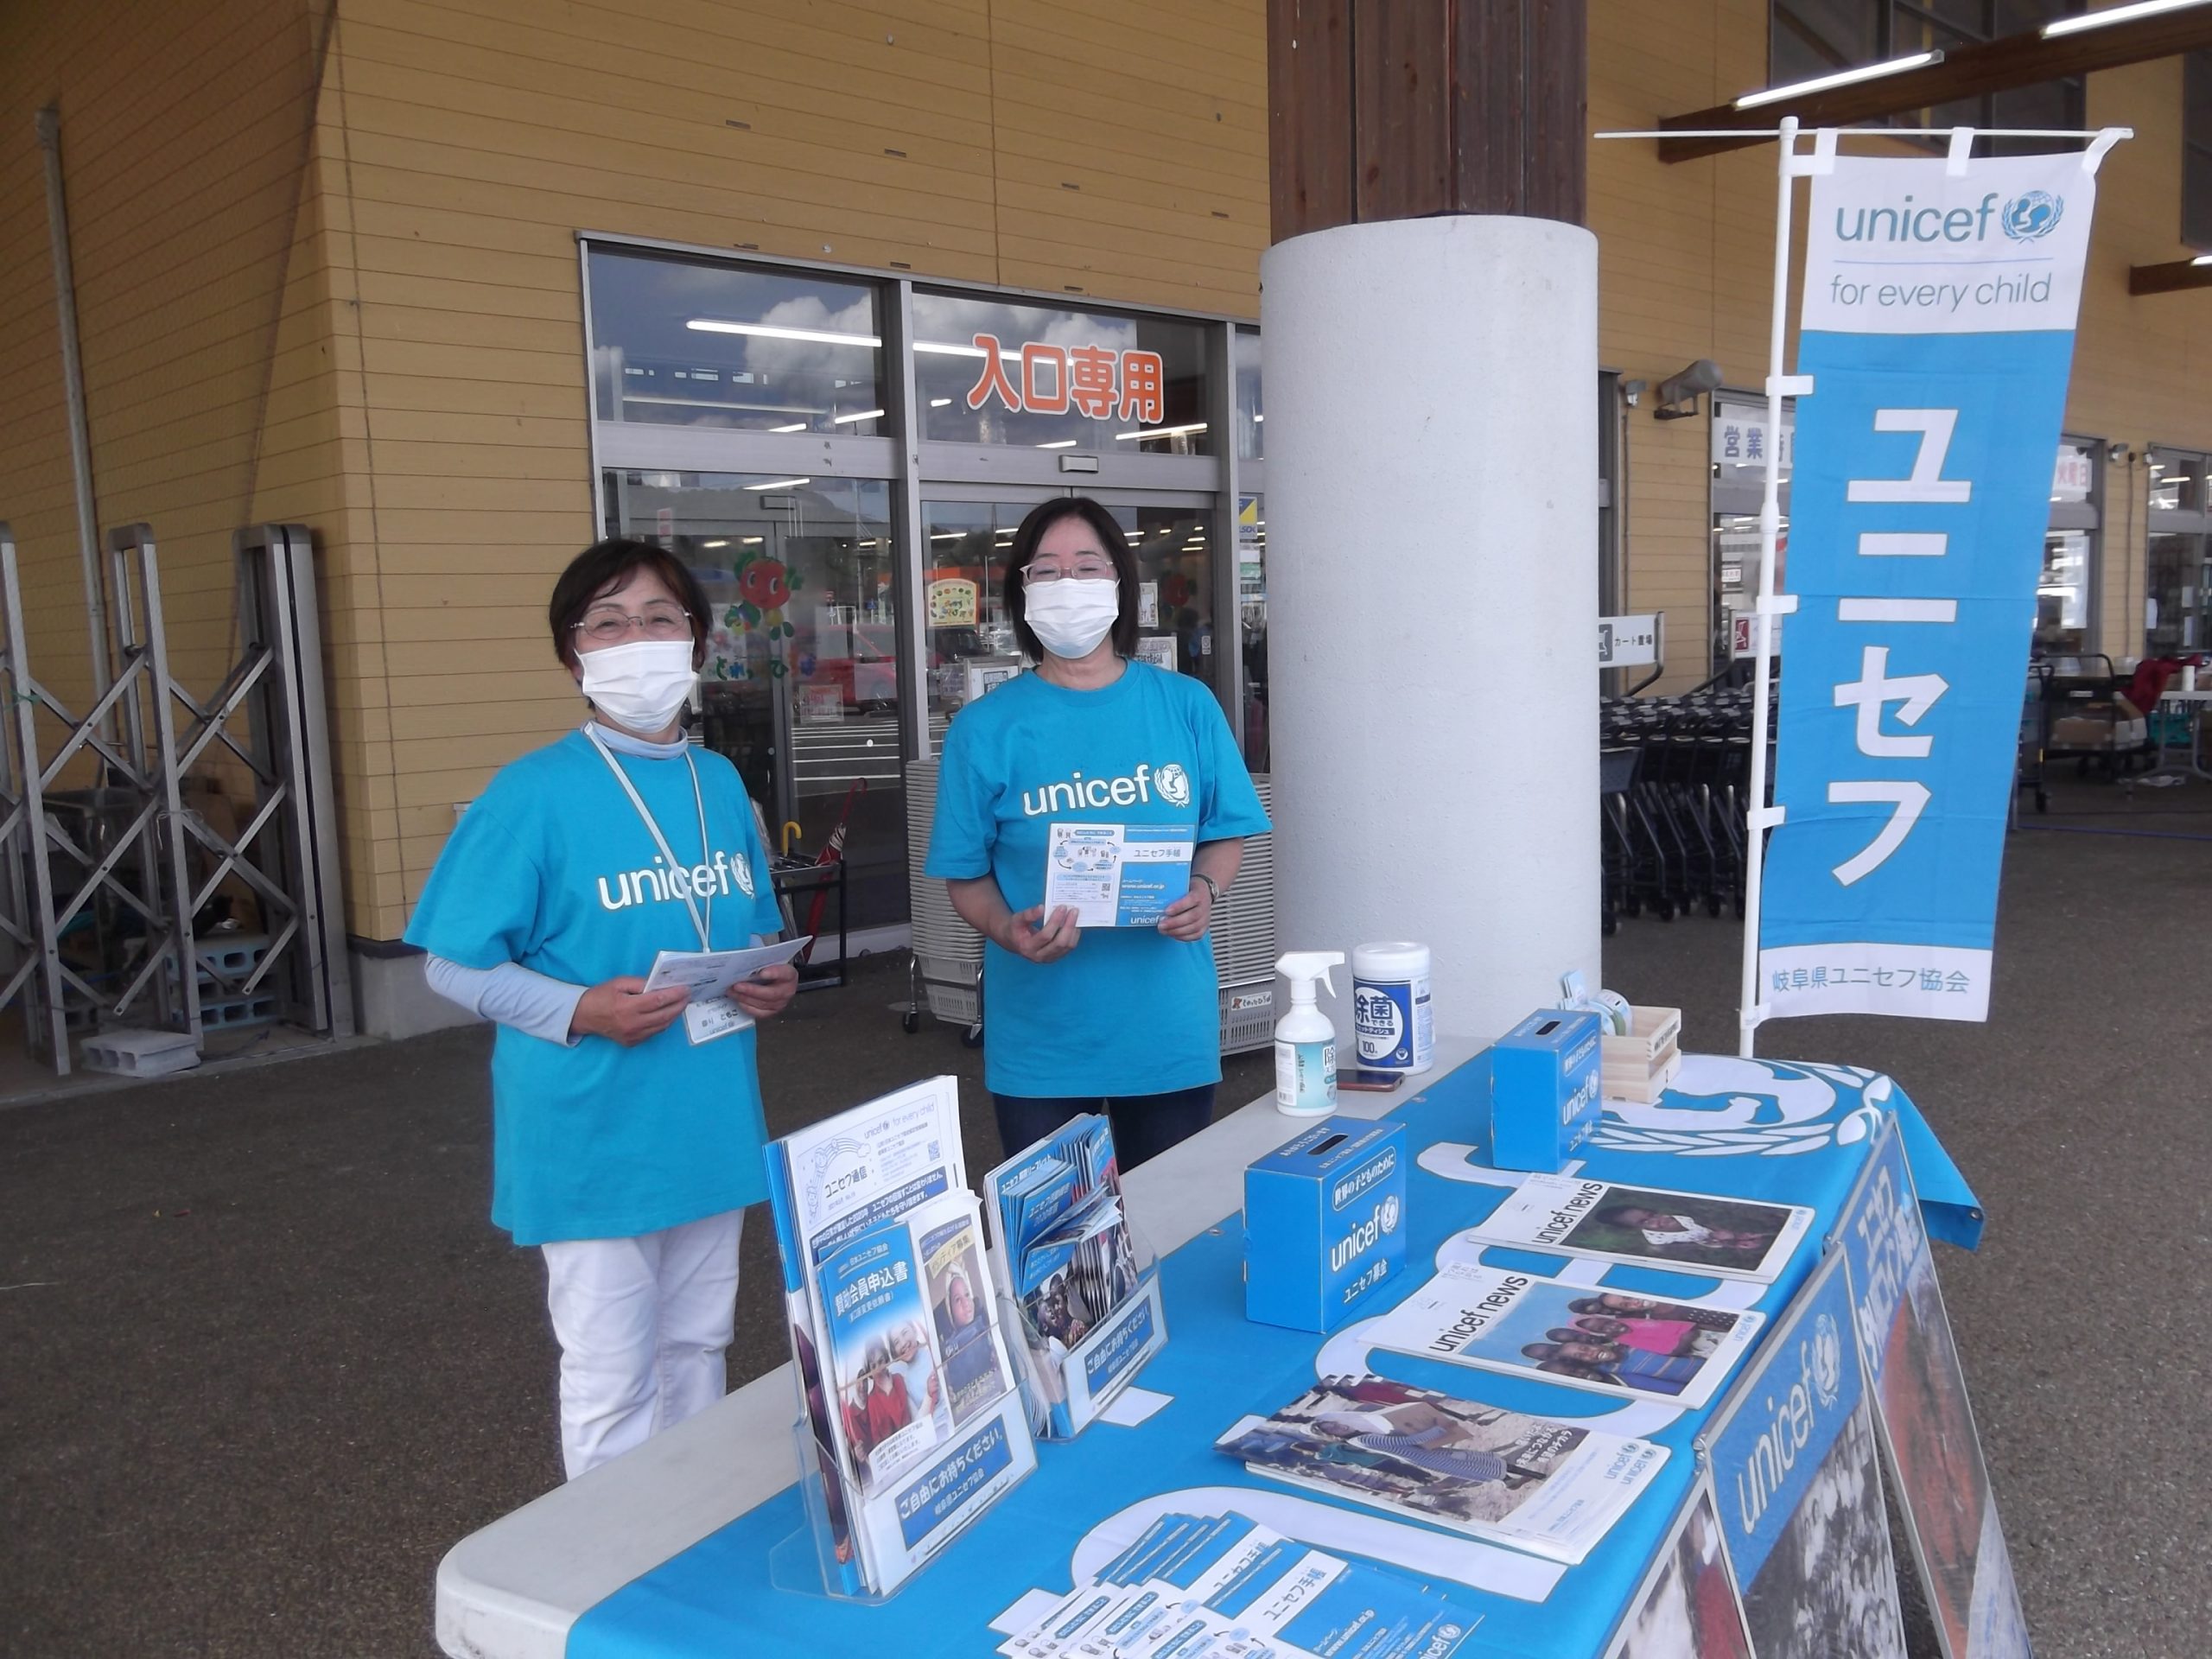 7月18日 日 Jaめぐみの とれったひろば関店で募金活動を行いました 岐阜県ユニセフ協会